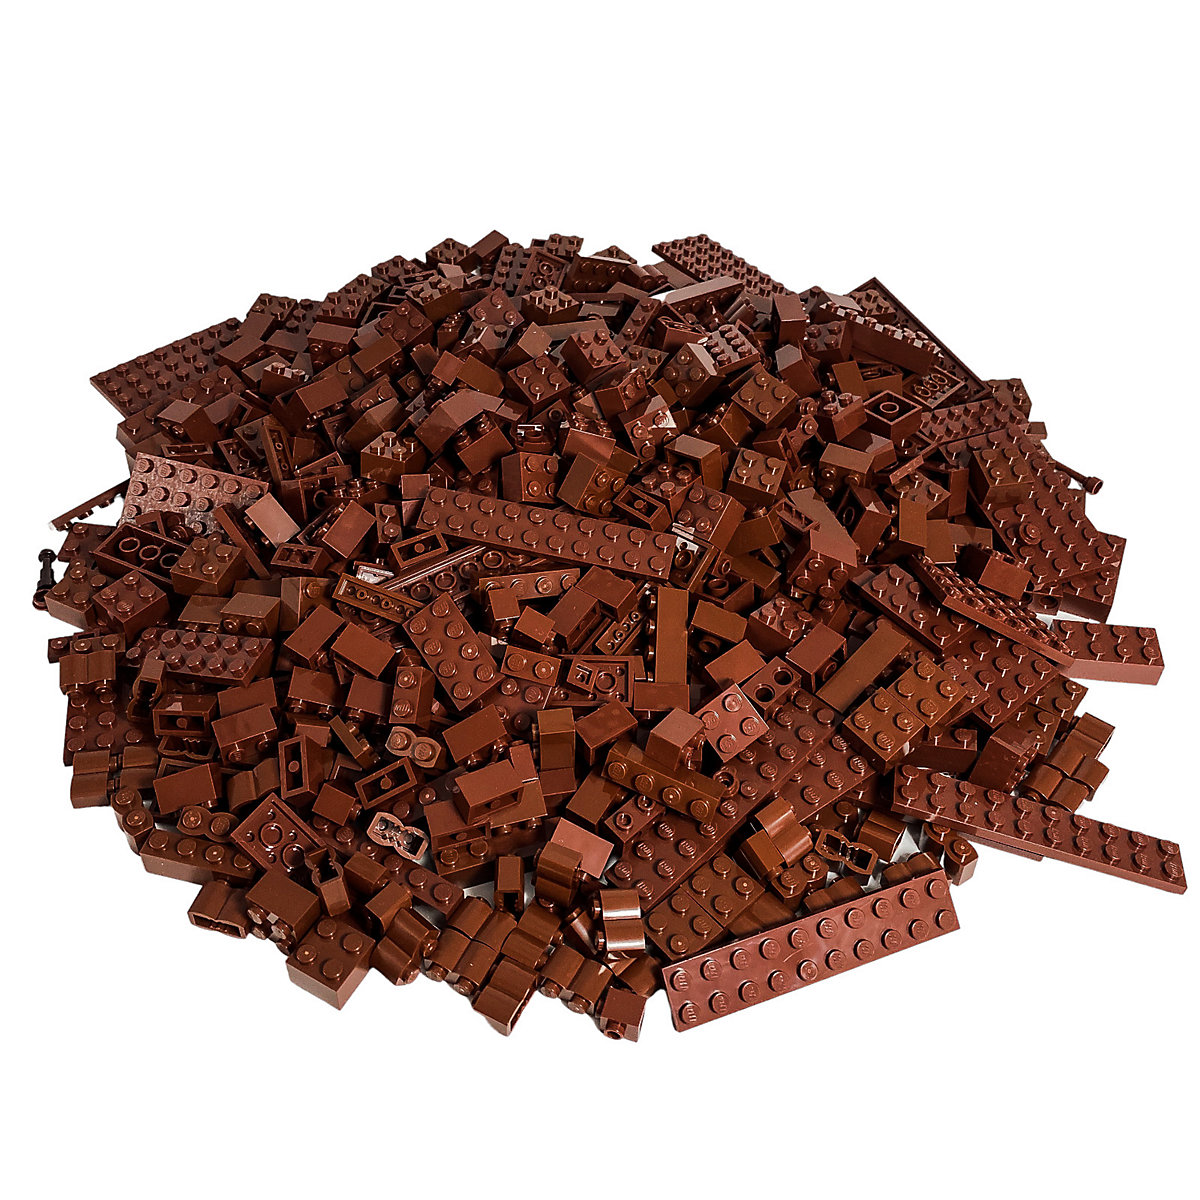 LEGO® Steine Braun gemischt 250 Stück Reddish Brown bricks mix NEU